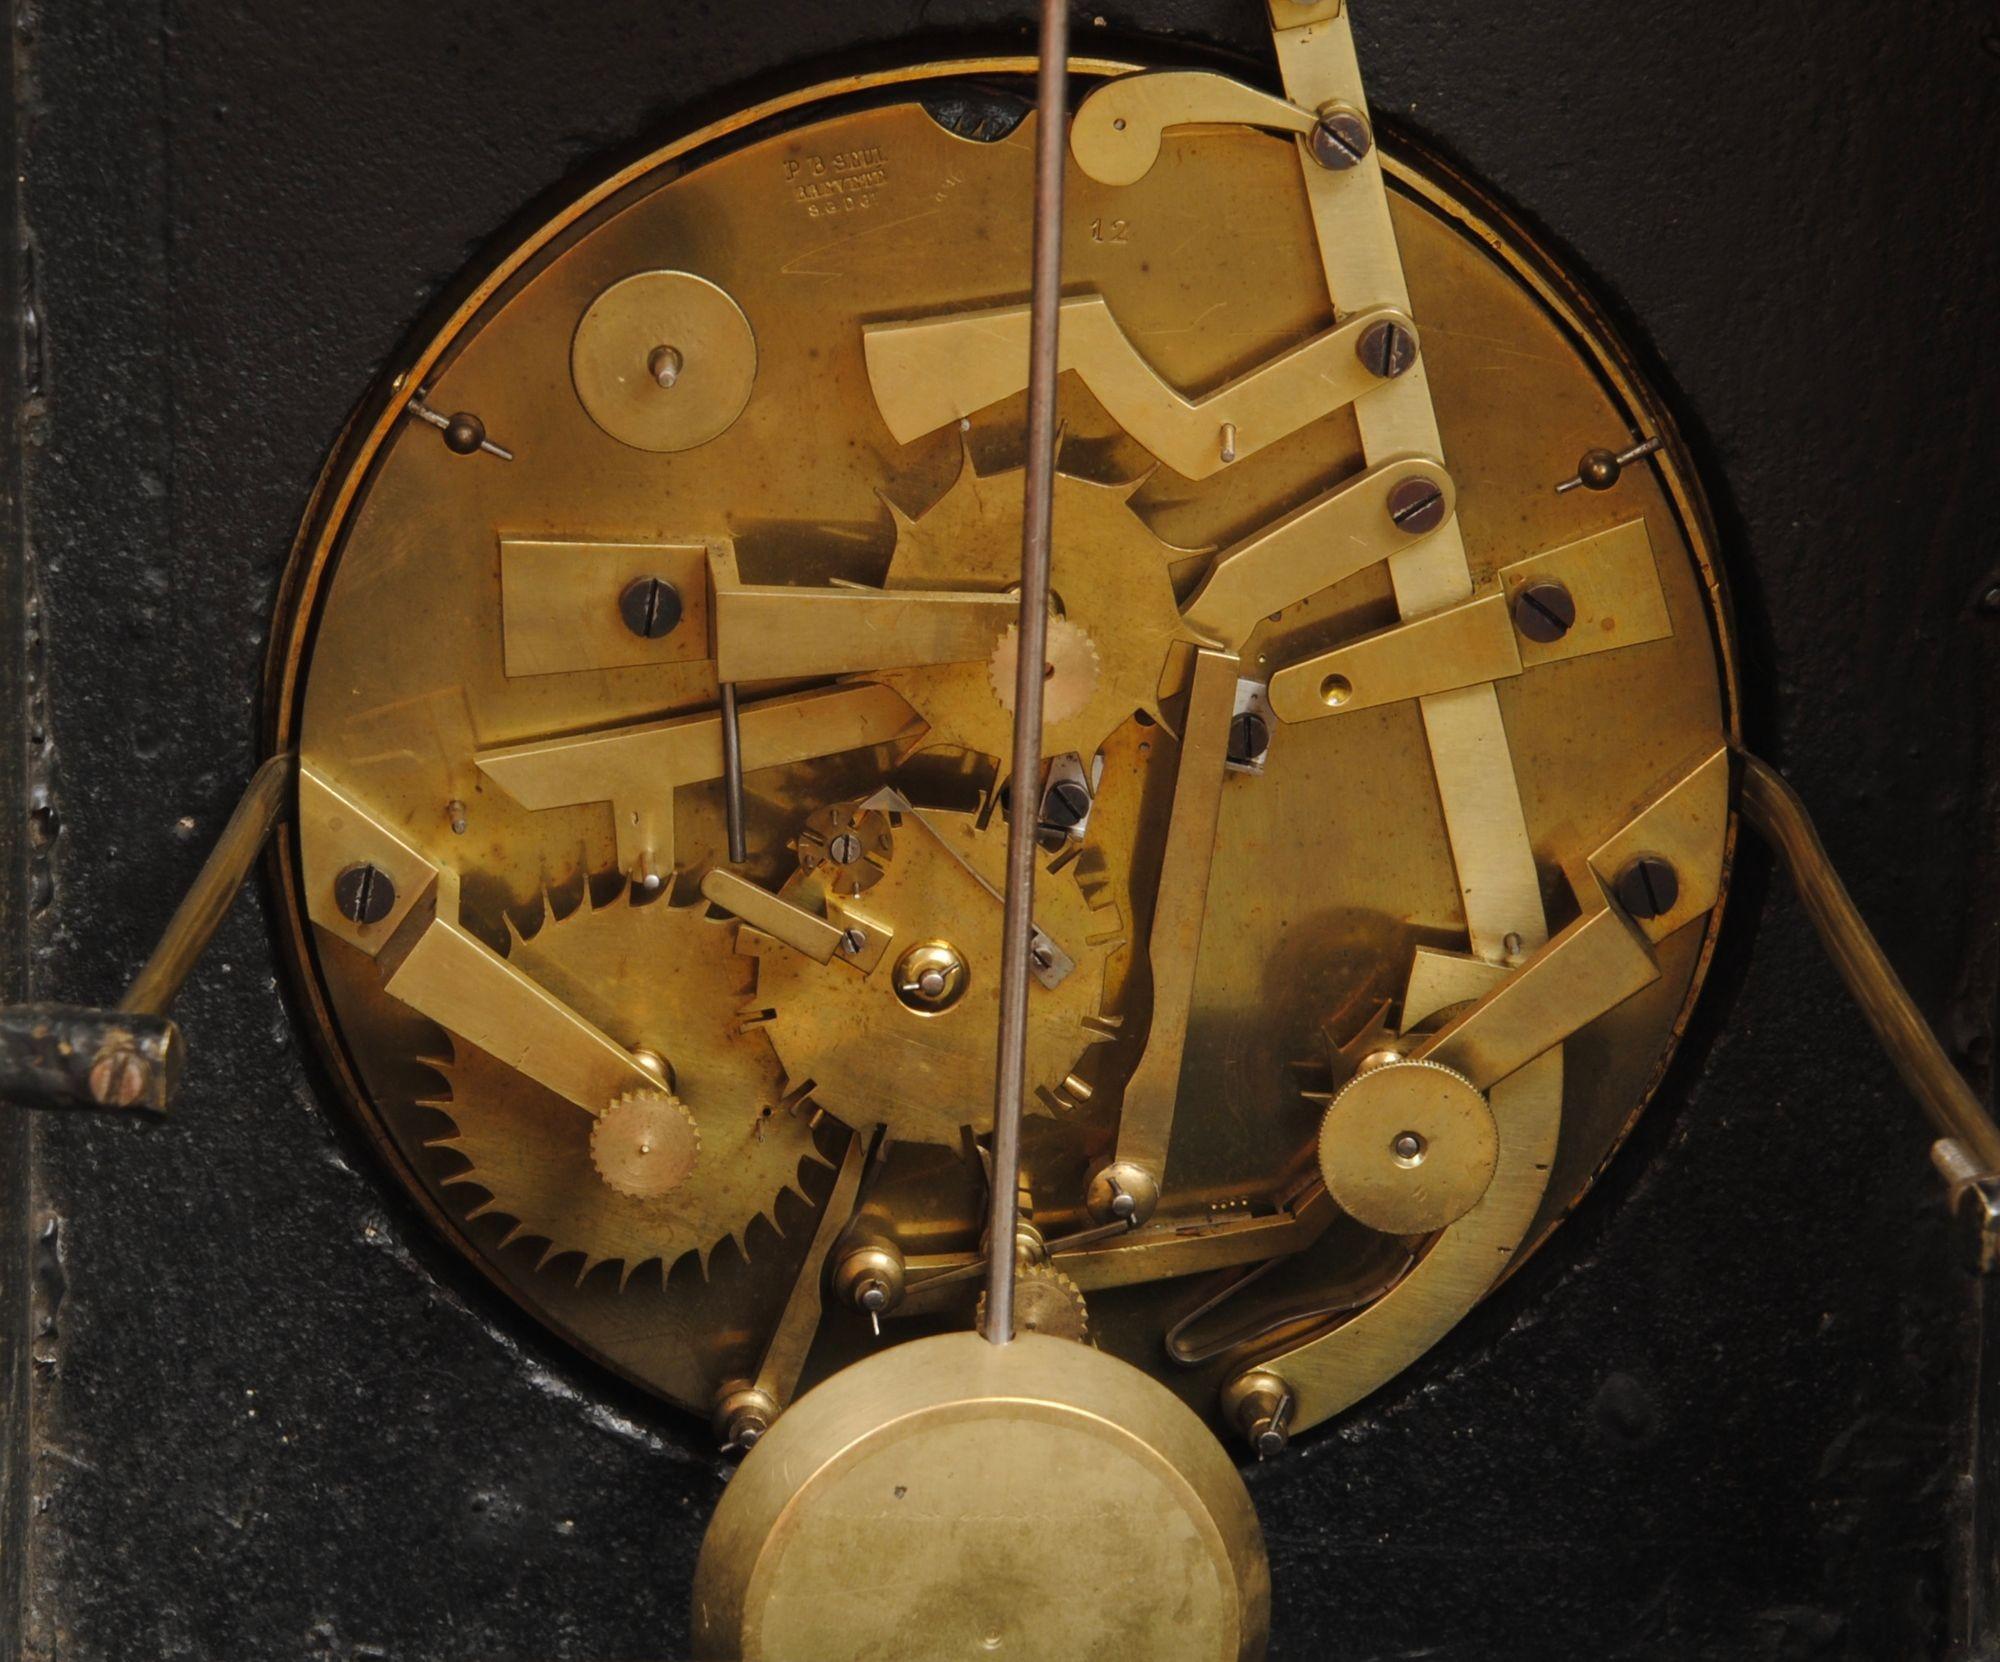 Pendule à phase de lune perpétuelle en ardoise belge avec échappement en brocot visible sur le cadran émaillé.

Le cadran en émail du calendrier est magnifiquement peint de jeunes filles. Les deux cadrans sont enchâssés dans une plaque en bronze